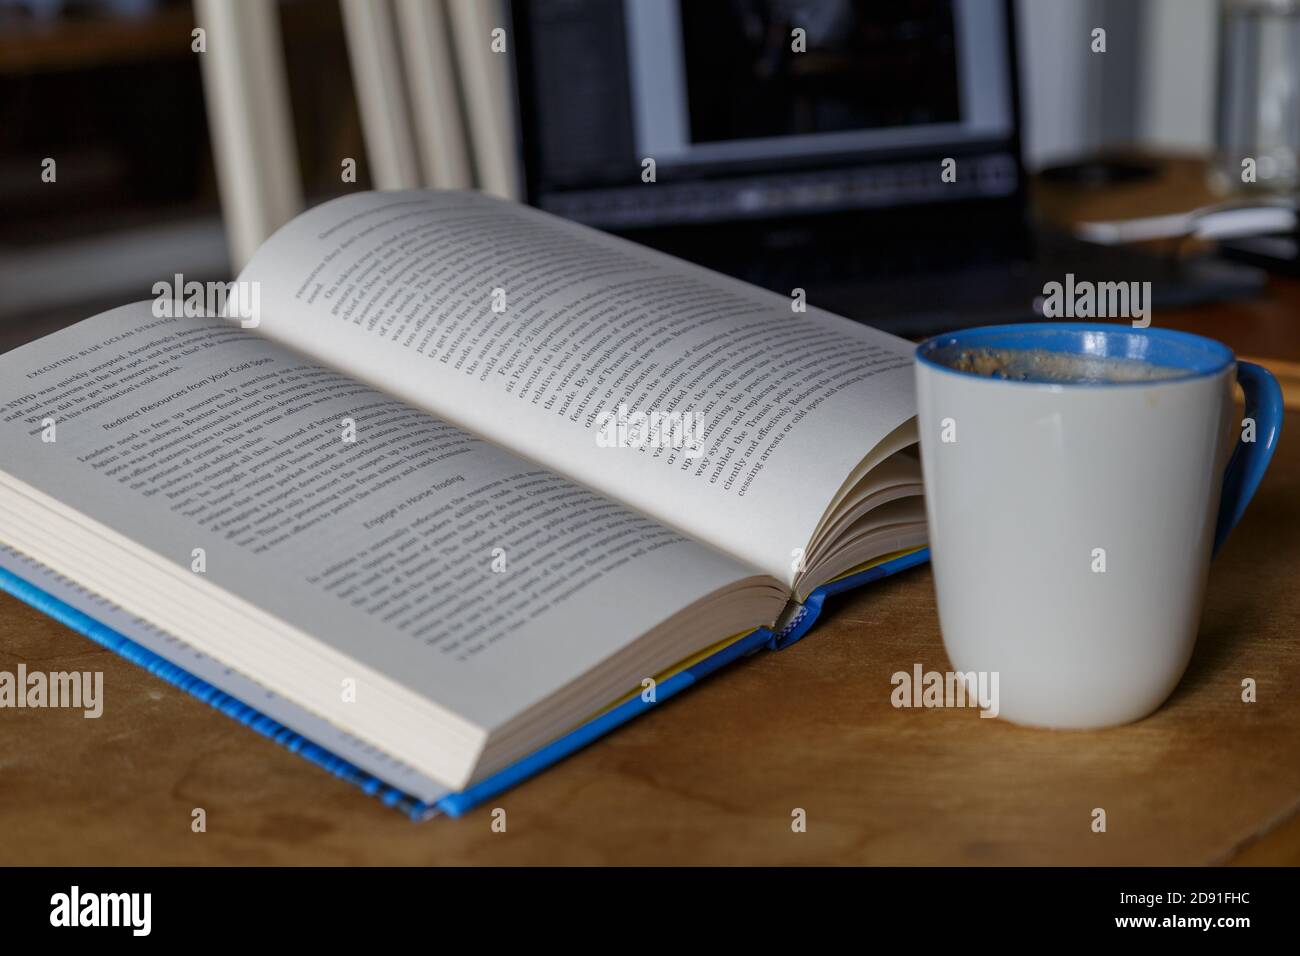 Multitasking reading drinking coffee working on laptop Stock Photo